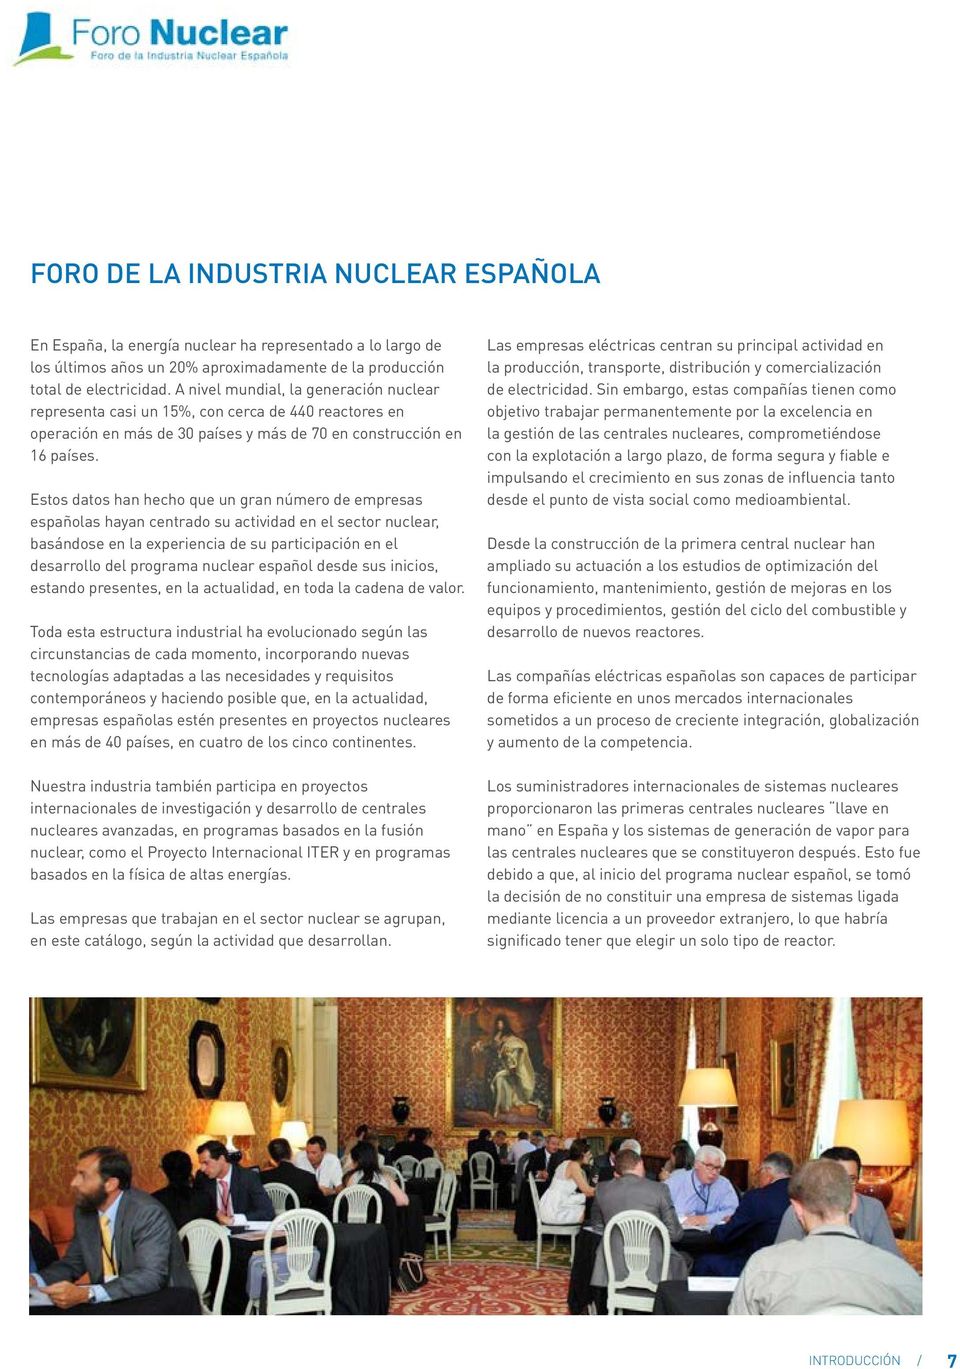 Estos datos han hecho que un gran número de empresas españolas hayan centrado su actividad en el sector nuclear, basándose en la experiencia de su participación en el desarrollo del programa nuclear